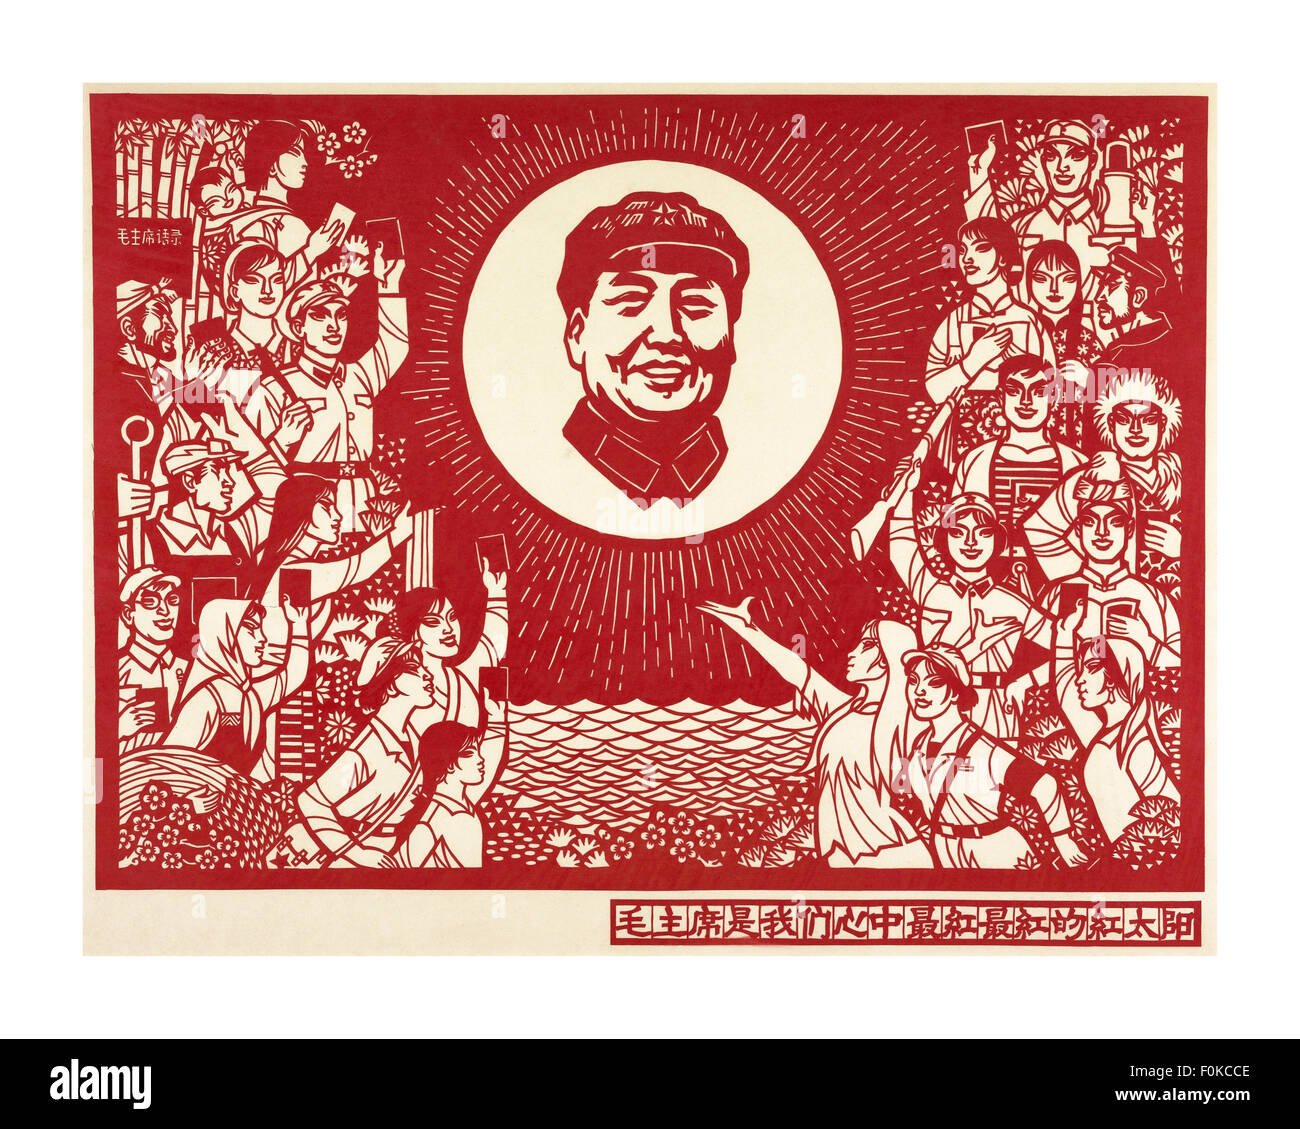 1960 cartel propagandístico de la República Popular de China de Mao Tsetung con trabajadores sosteniendo el libro rojo, utilizando los antiguos chinos artesanal de papel cortado Foto de stock